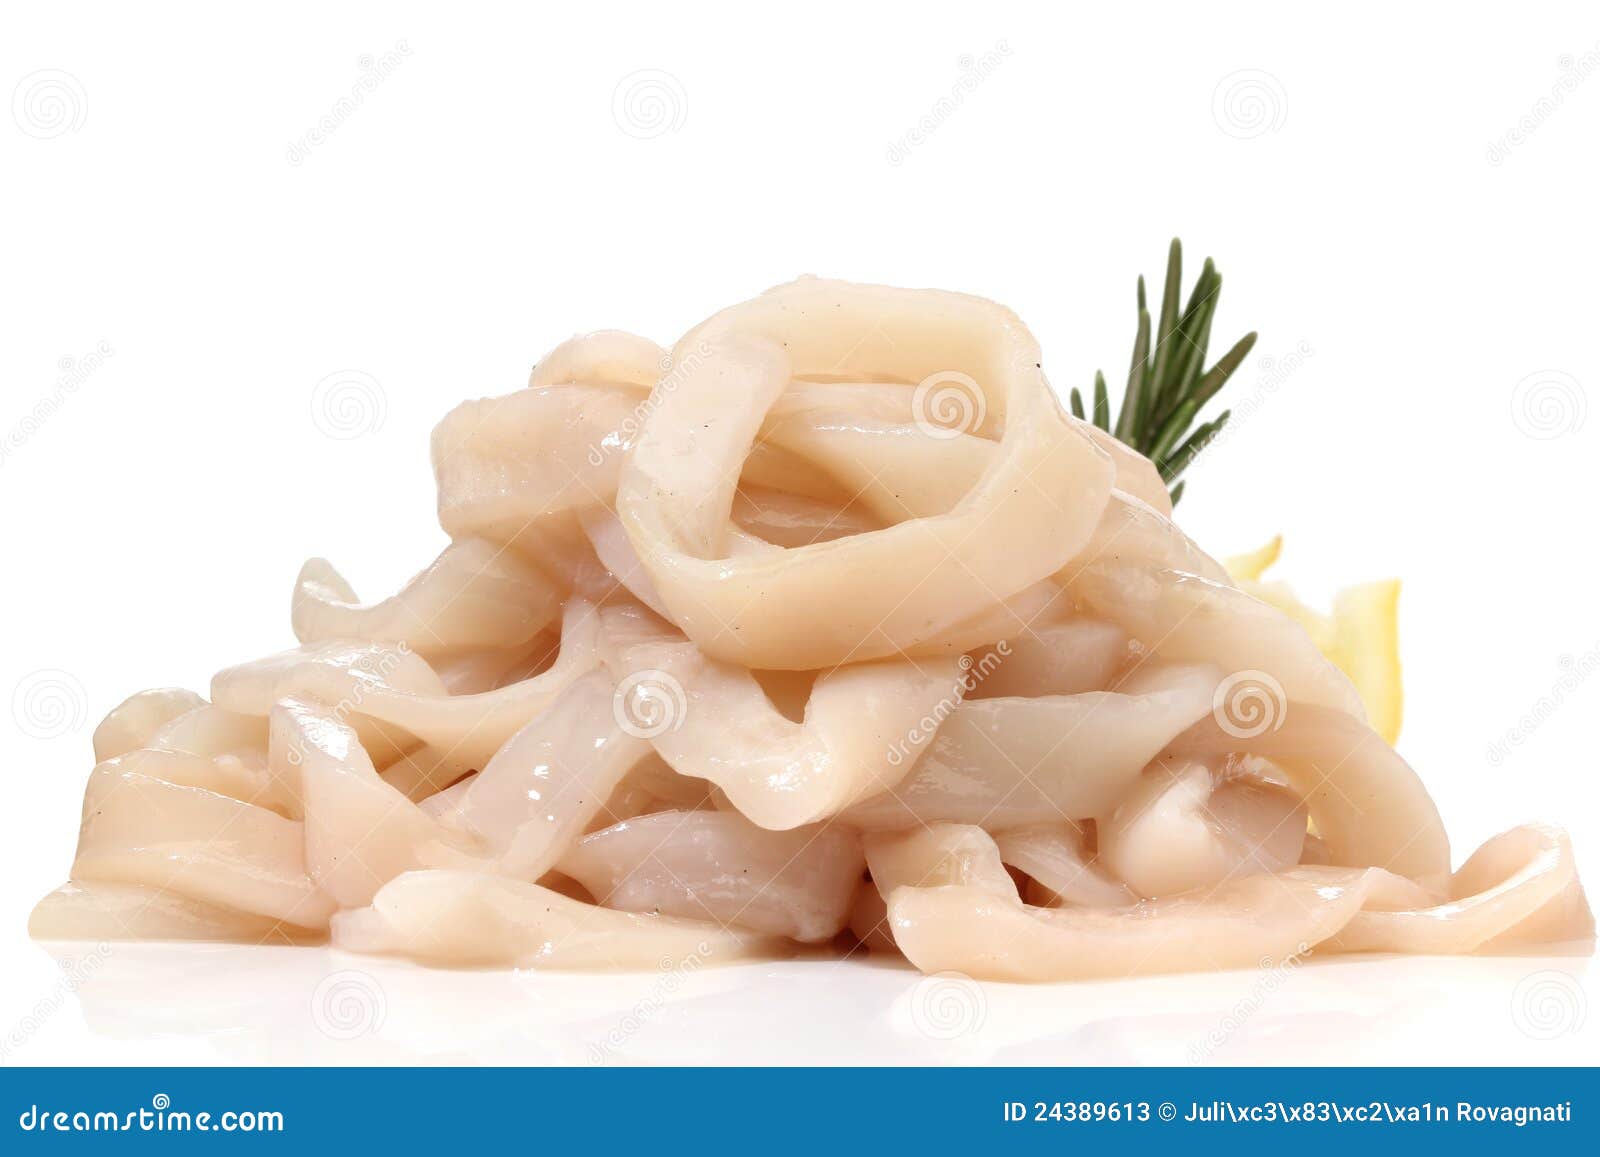 pile of raw squid rings